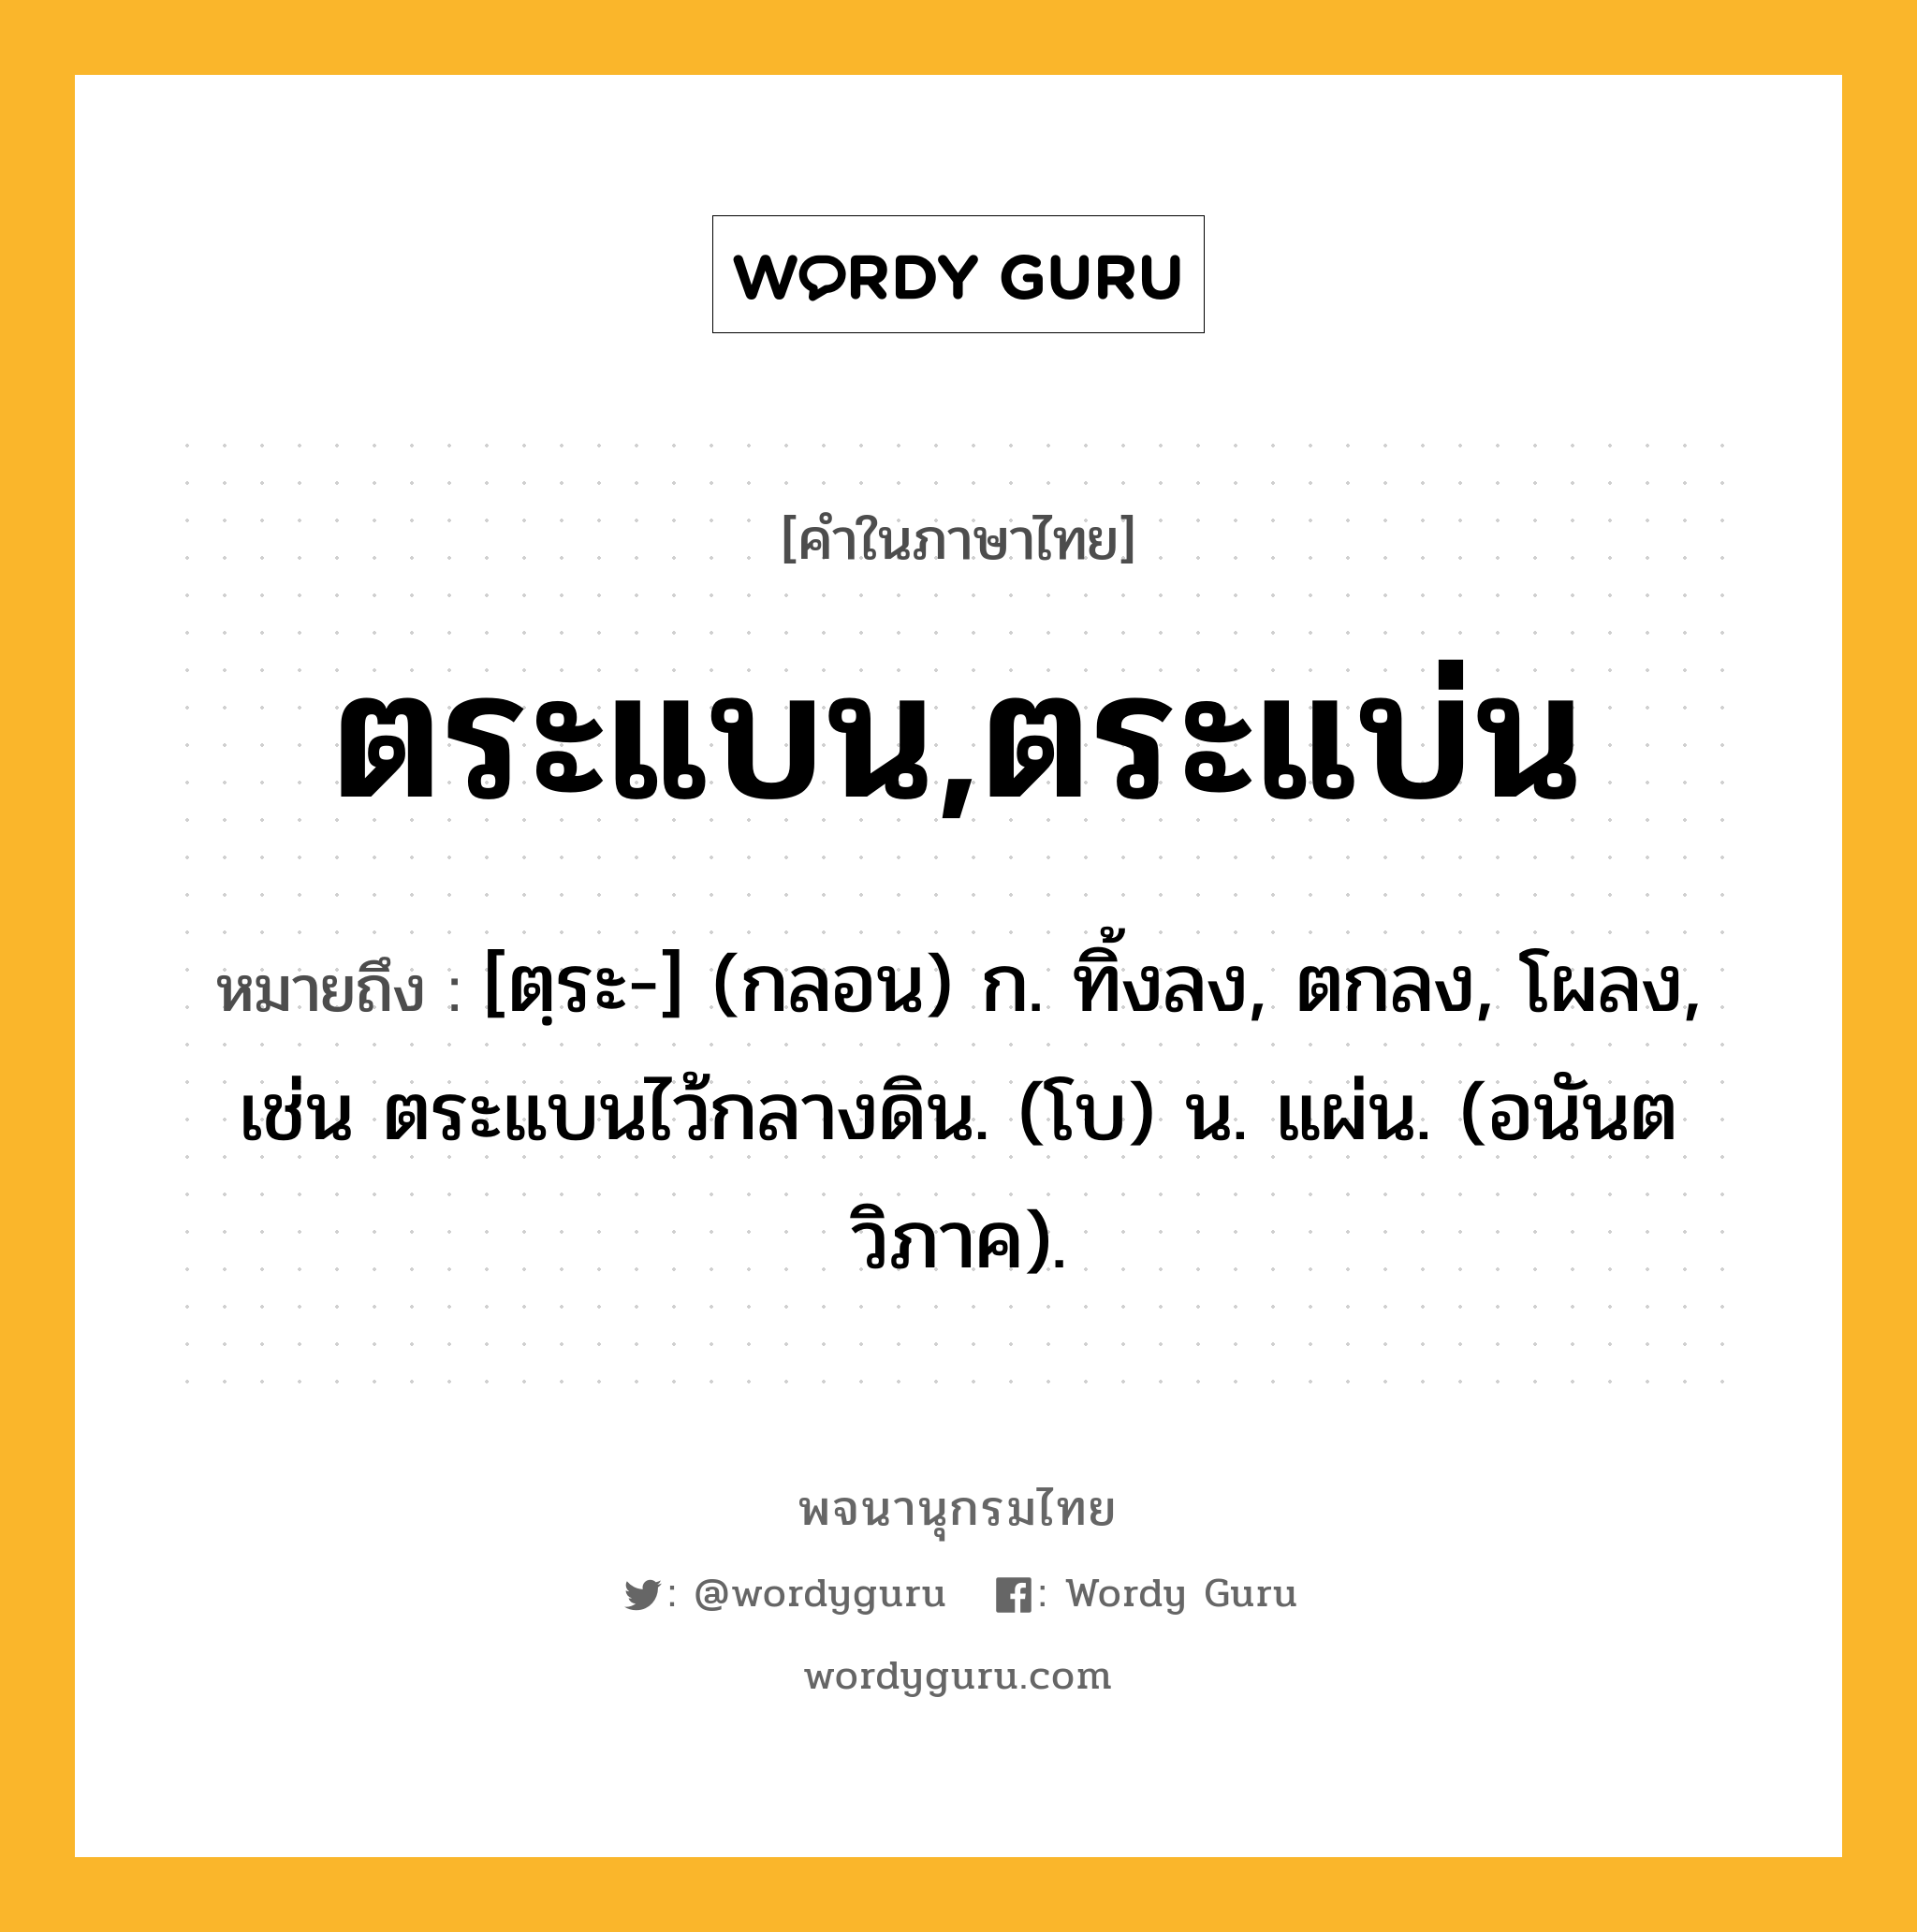 ตระแบน,ตระแบ่น หมายถึงอะไร?, คำในภาษาไทย ตระแบน,ตระแบ่น หมายถึง [ตฺระ-] (กลอน) ก. ทิ้งลง, ตกลง, โผลง, เช่น ตระแบนไว้กลางดิน. (โบ) น. แผ่น. (อนันตวิภาค).